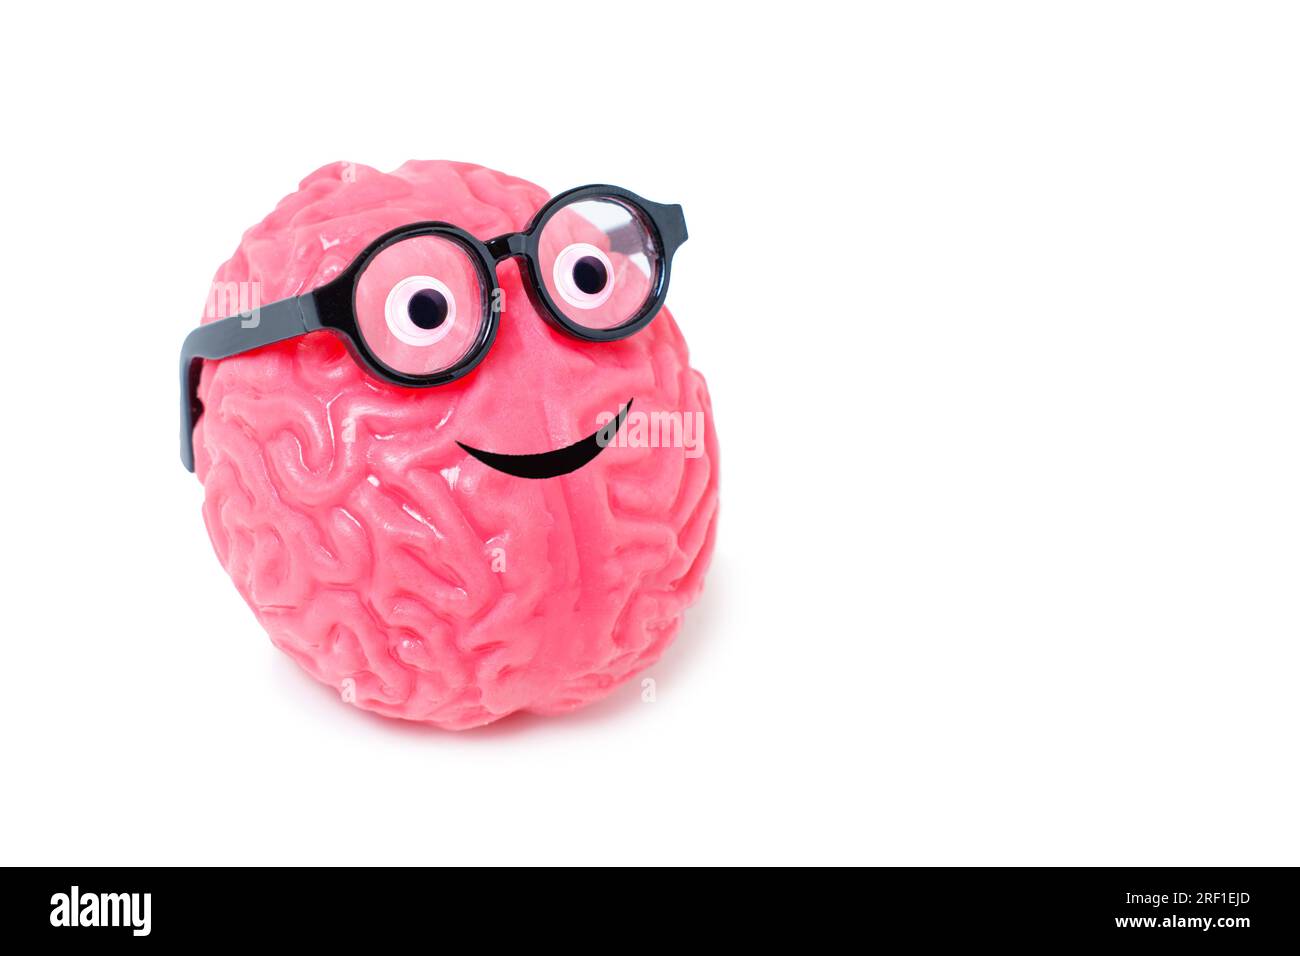 Sorridente compagno di cervello umano con occhi goocchi e occhiali nerd isolati su sfondo bianco con spazio per la copia. Foto Stock